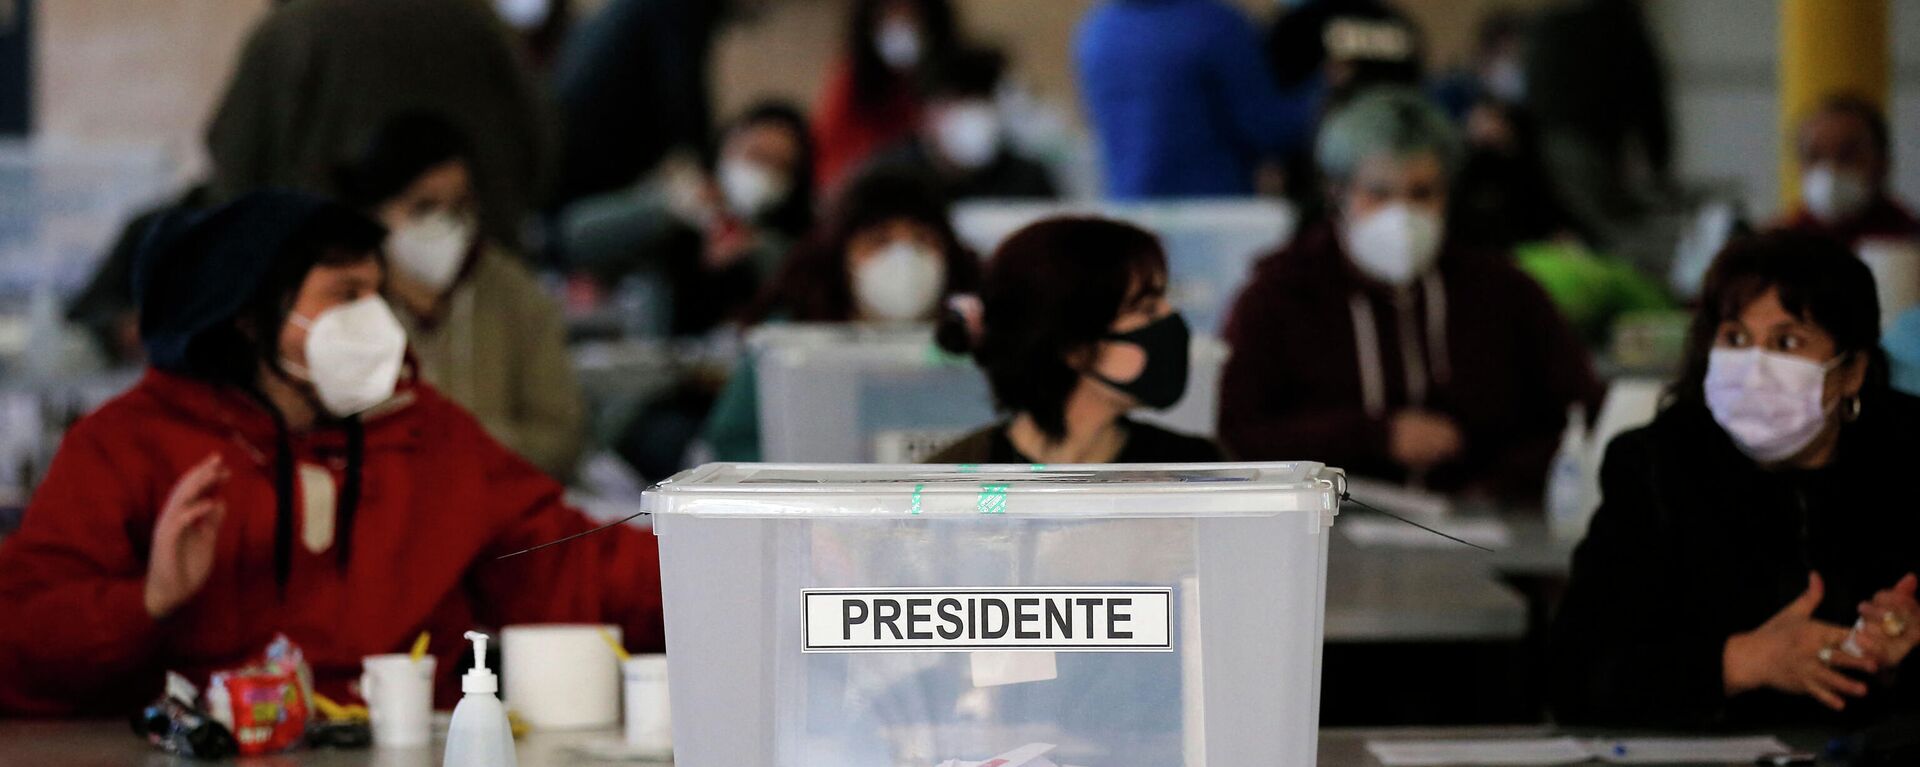 Elecciones primarias en Chile - Sputnik Mundo, 1920, 02.11.2021